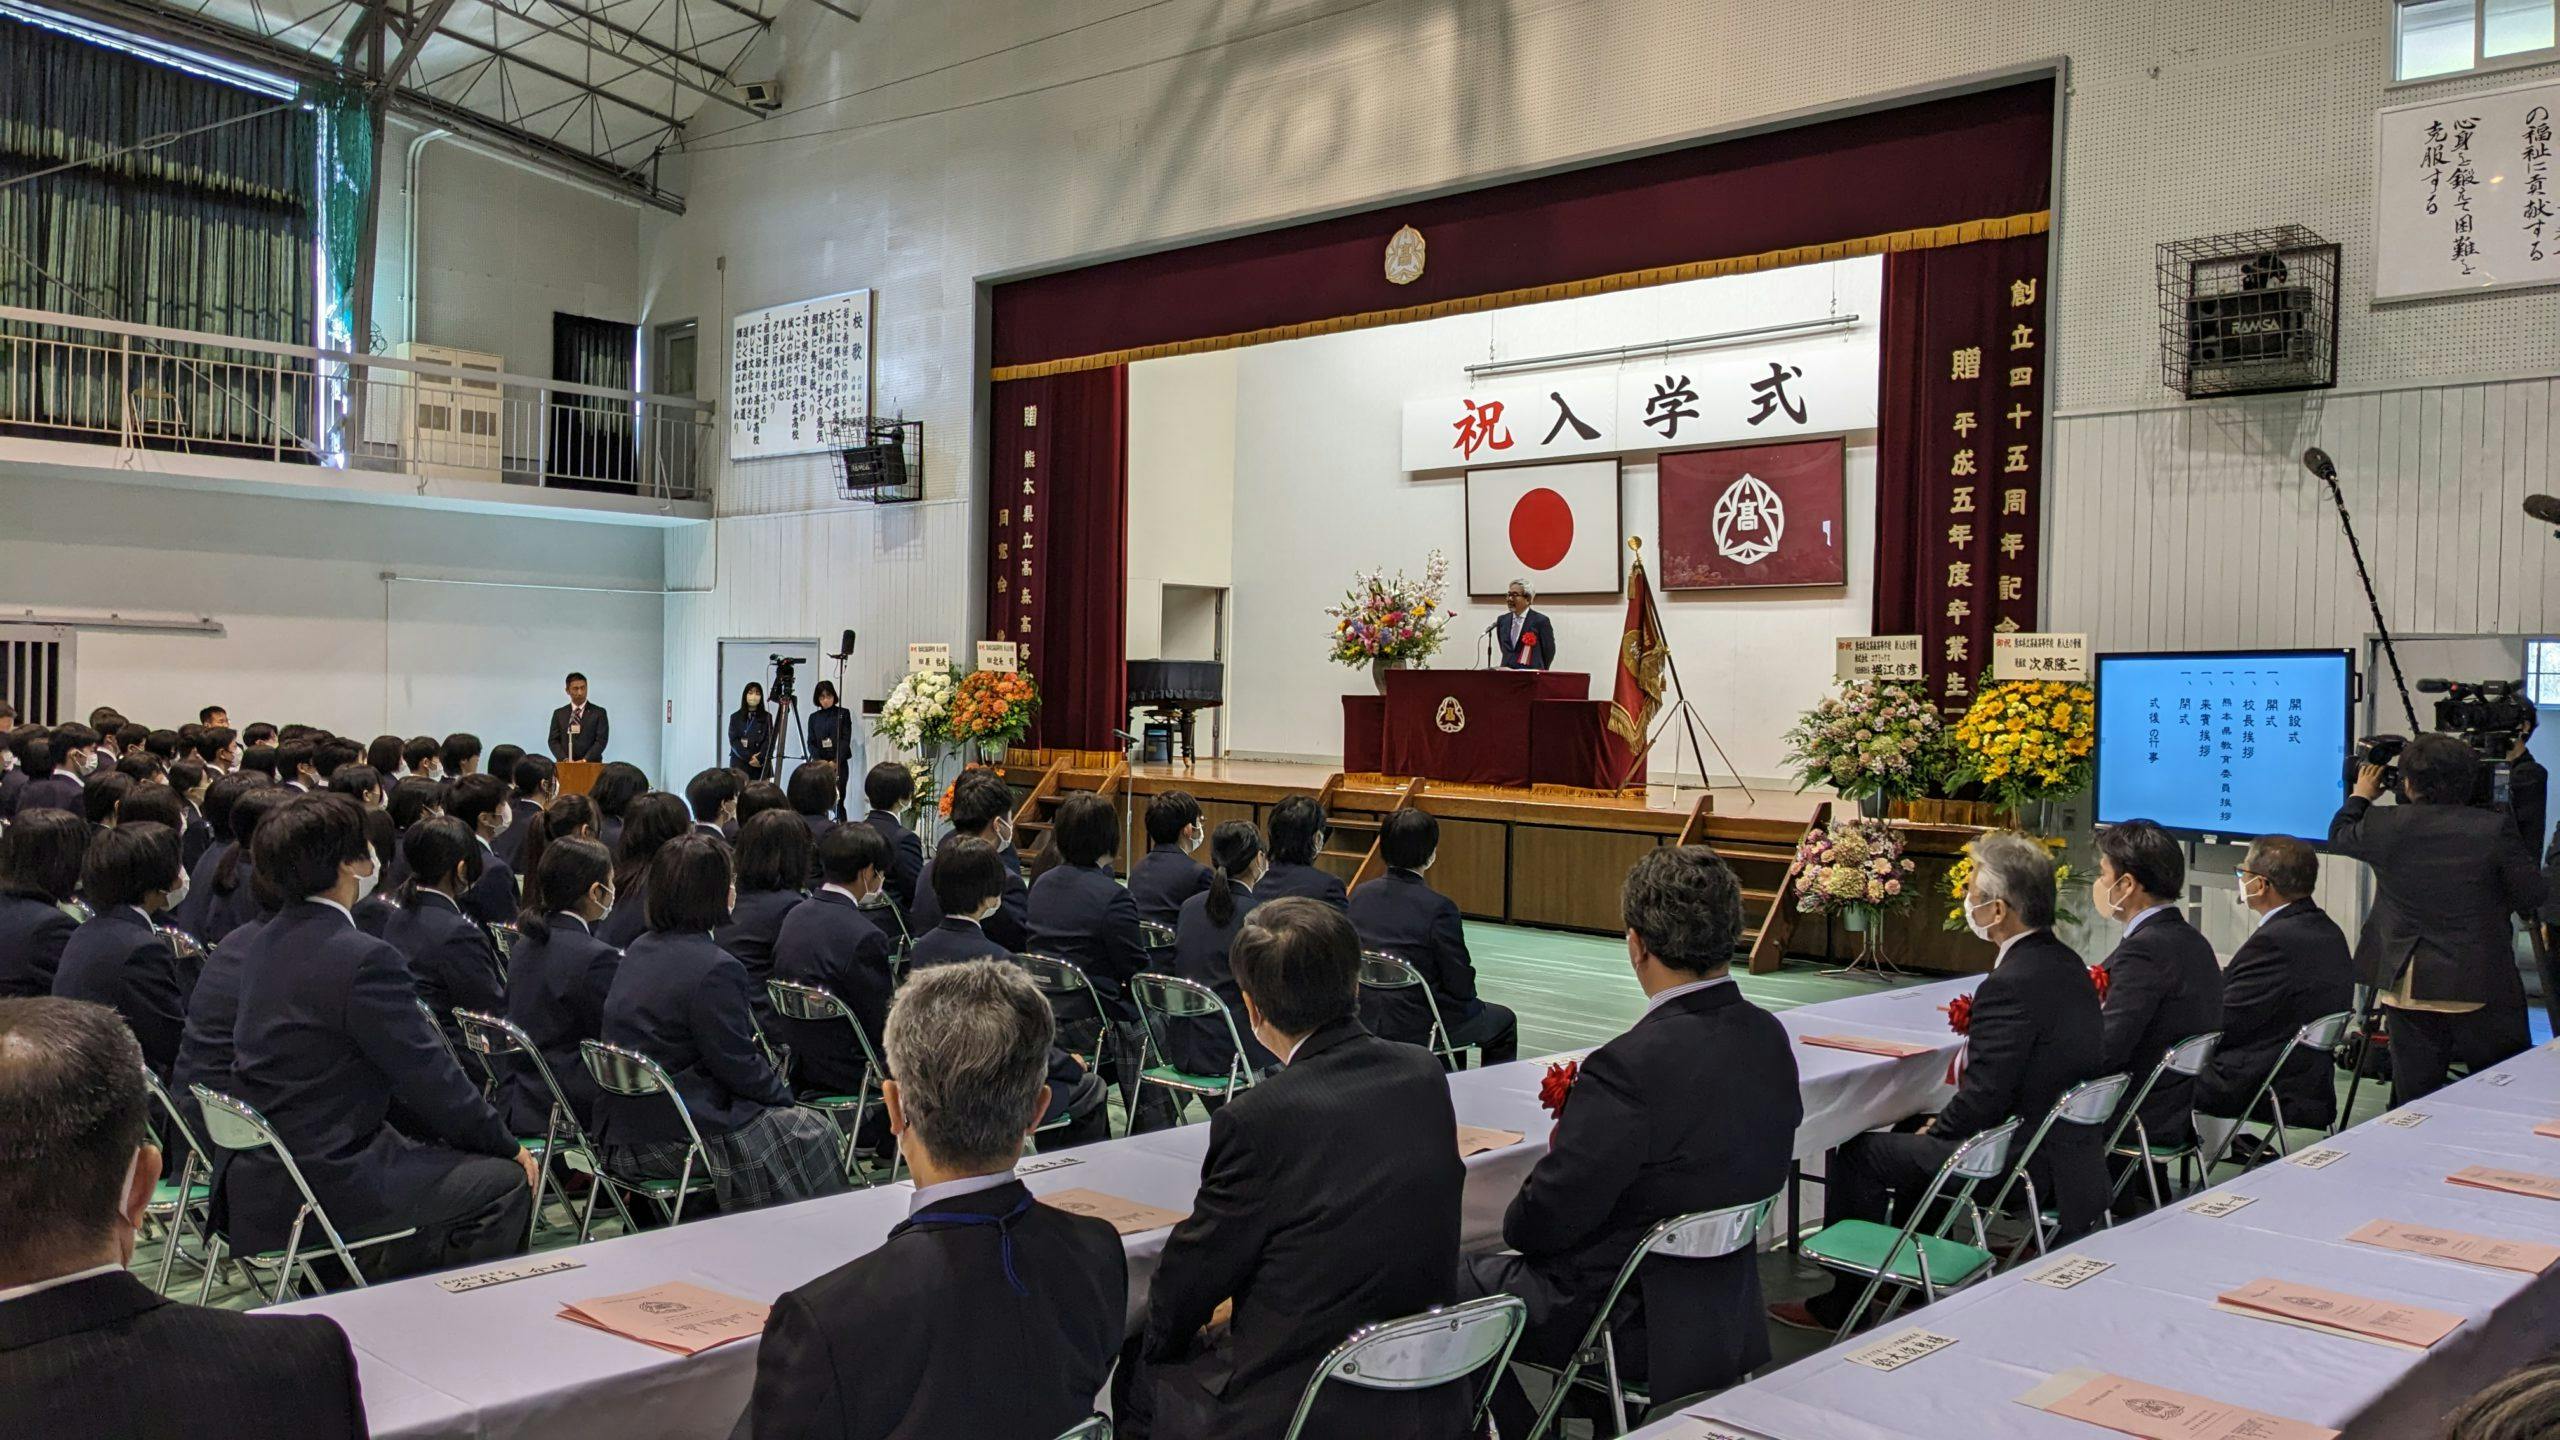 حفل دخول قسم المانجا في مدرسة تاكاموري الثانوية بمحافظة كوماموتو